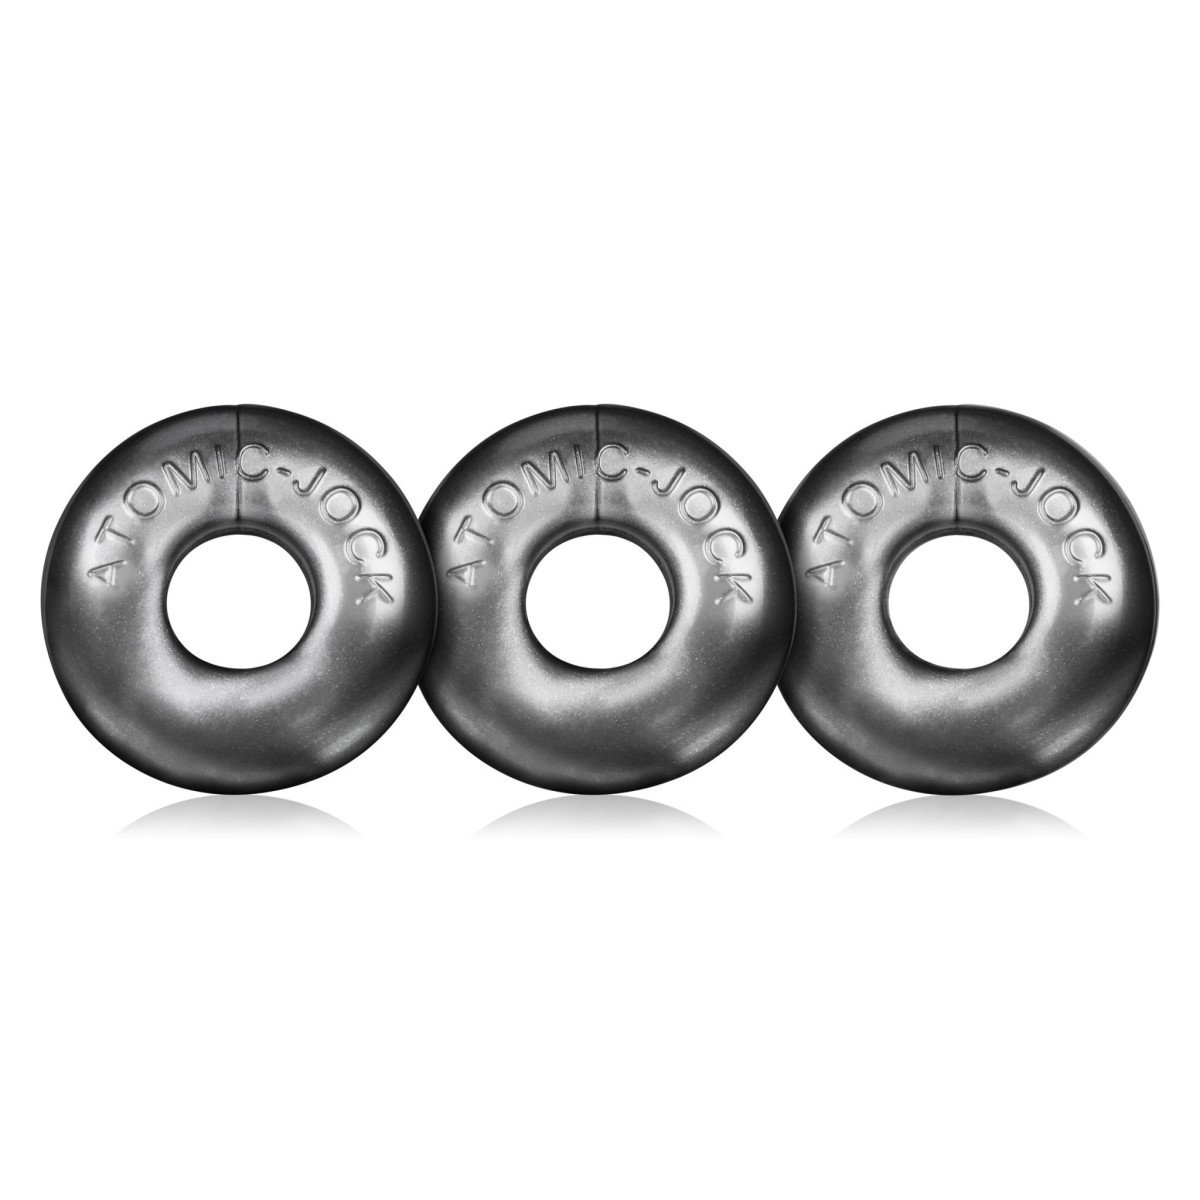 Oxballs Ringer 3-Pack Steel, sada 3 ks elastických erekčních kroužků